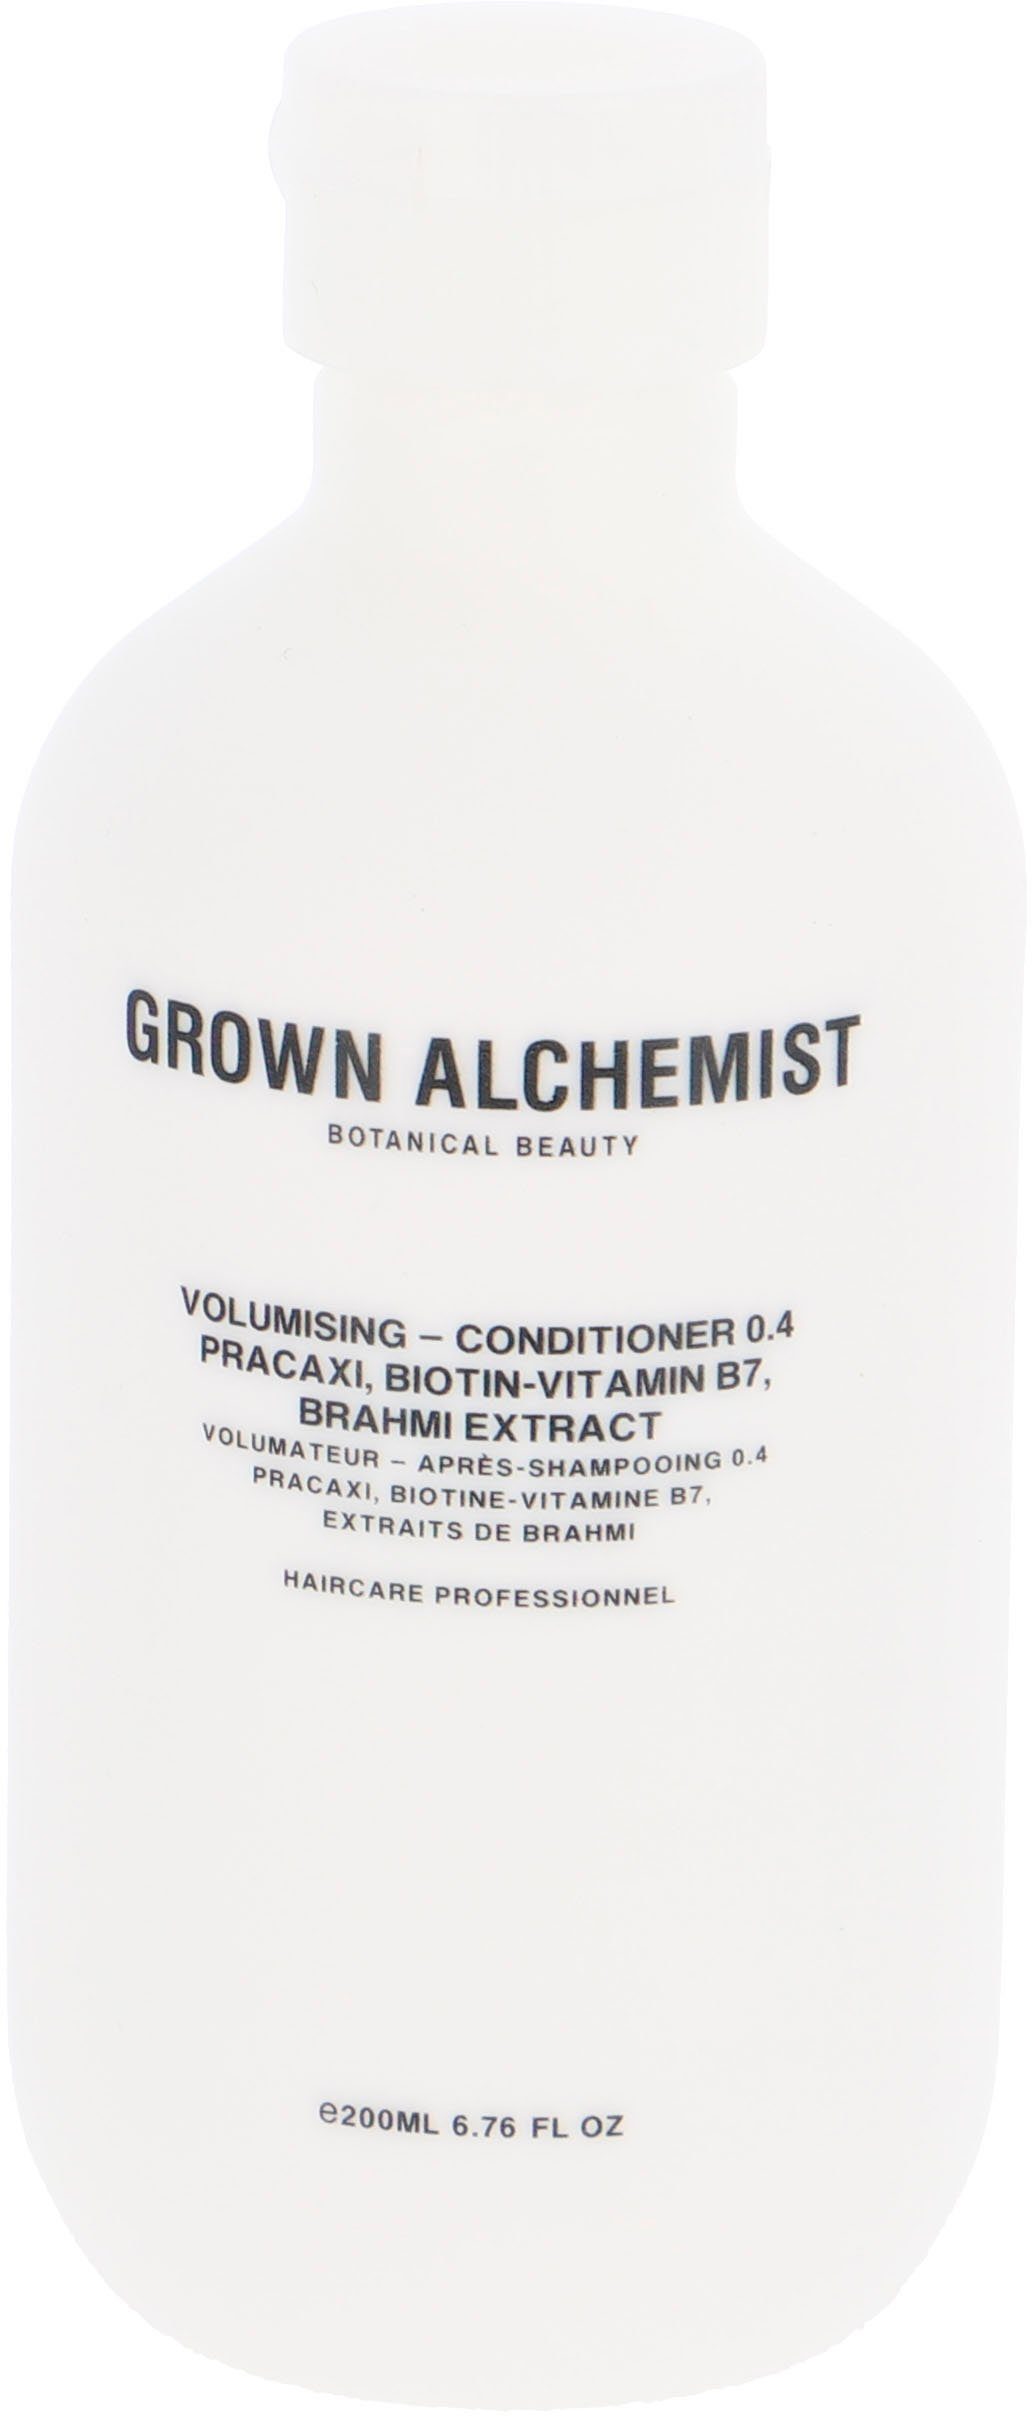 GROWN ALCHEMIST Haarspülung Volumising 0.4, Brahmi Biotin-Vitamin - Conditioner Extract B7, Pracaxi